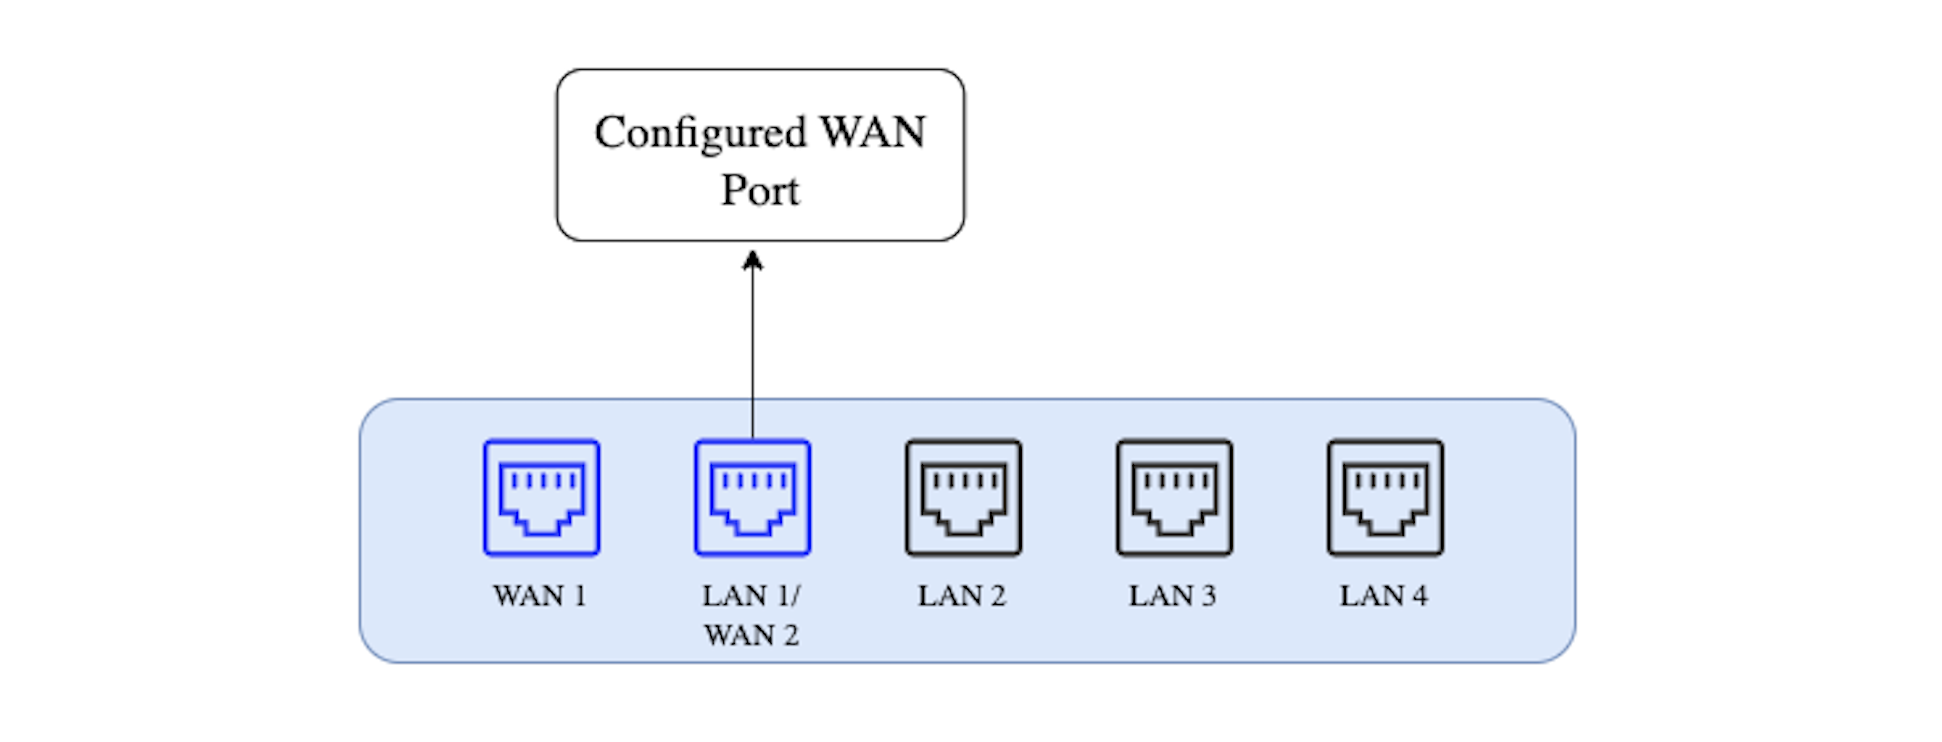 LAN port configured as WAN